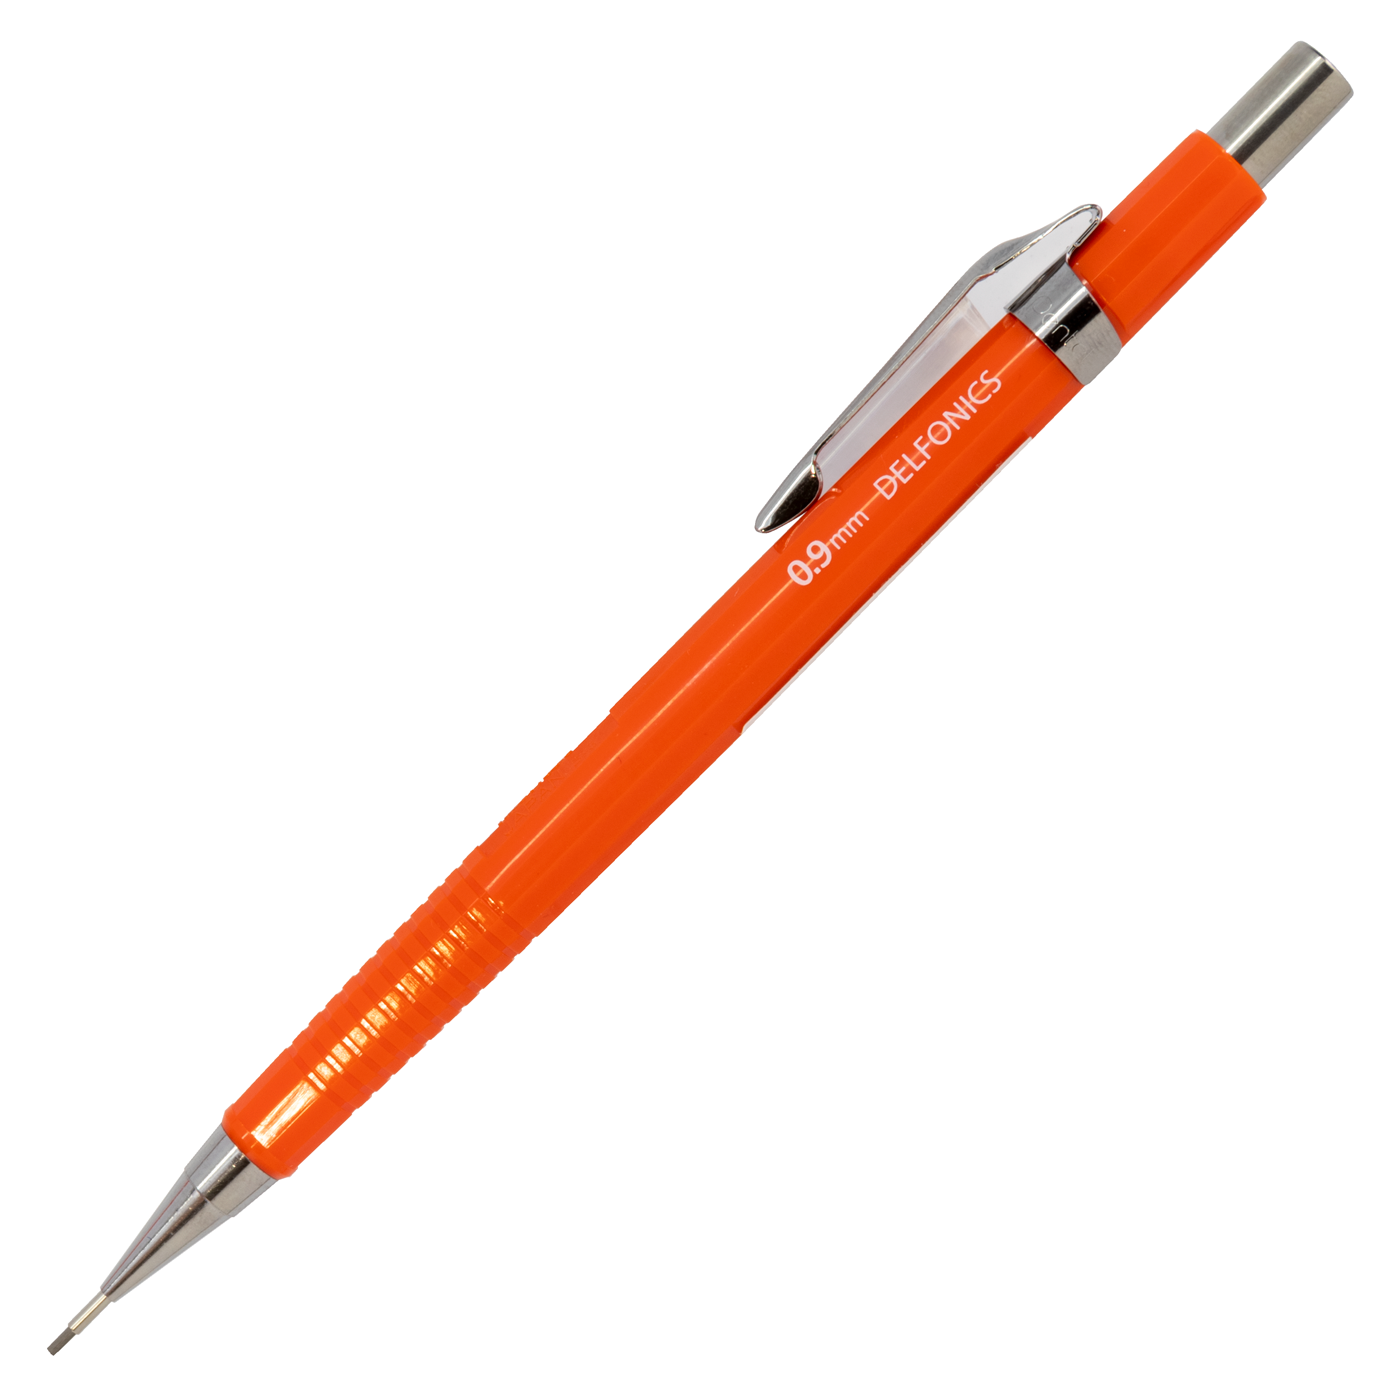 Delfonics X Penel Sharp Pencil- Red